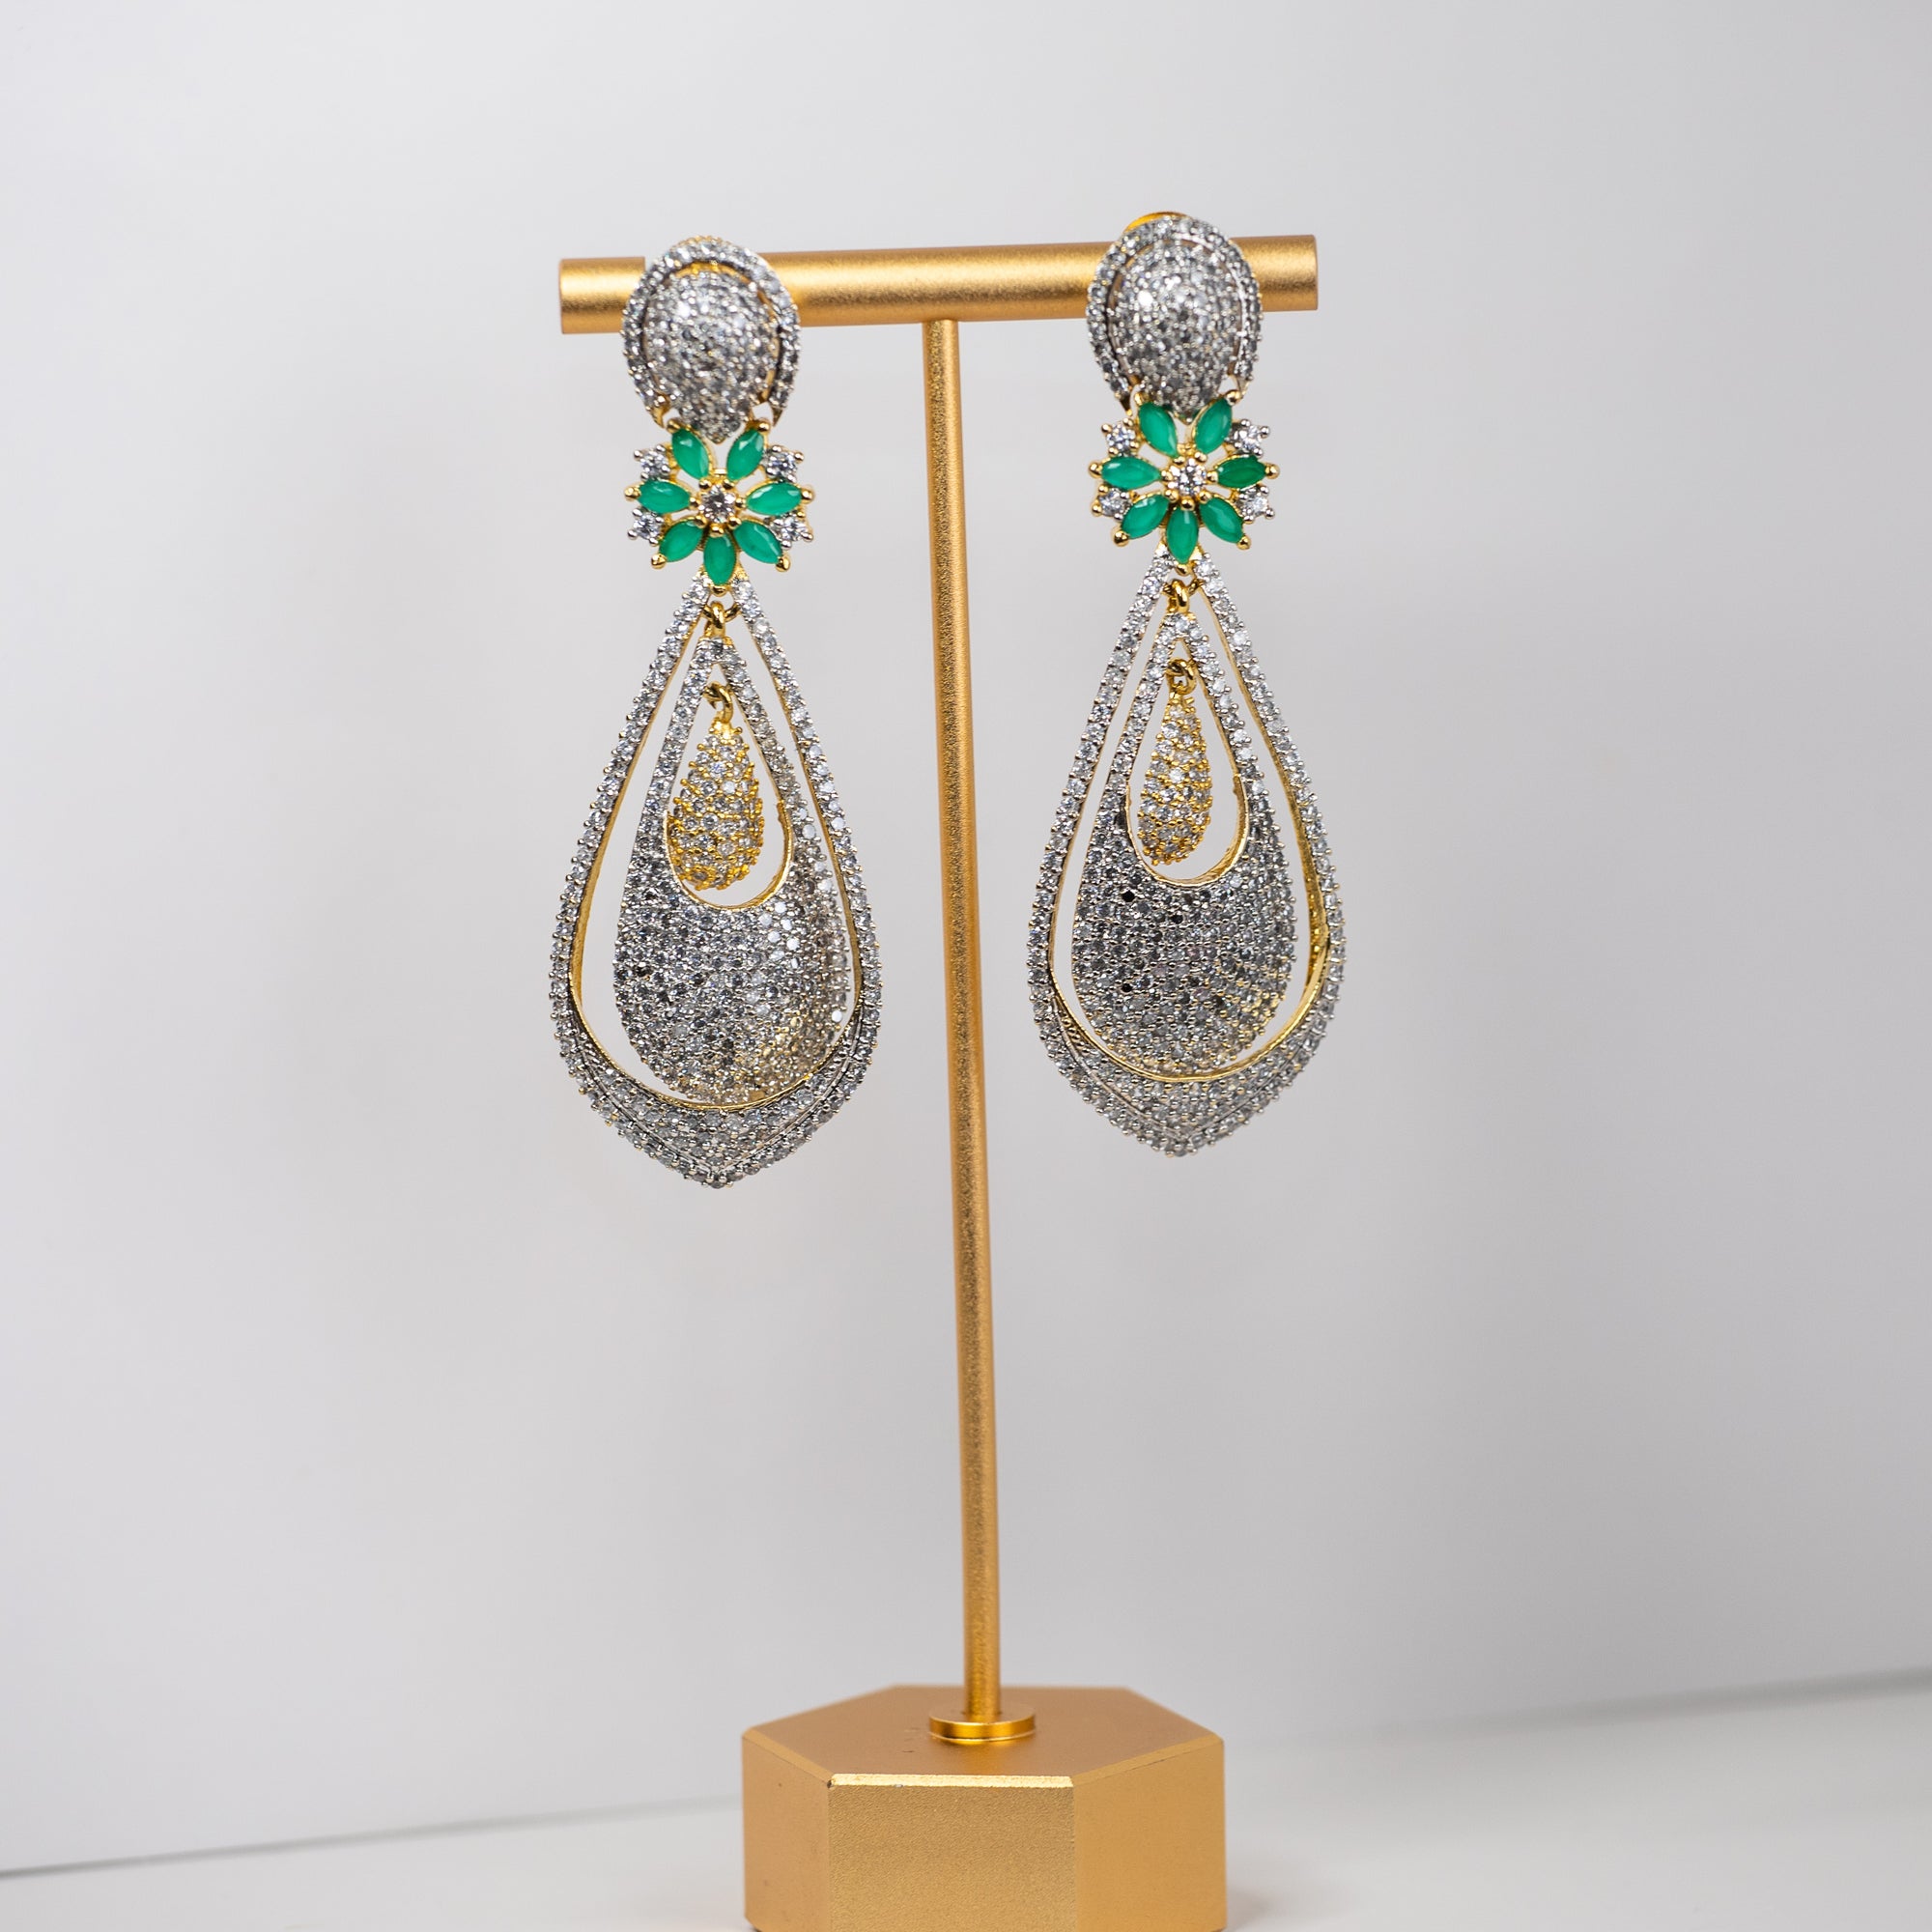 The Keri earrings